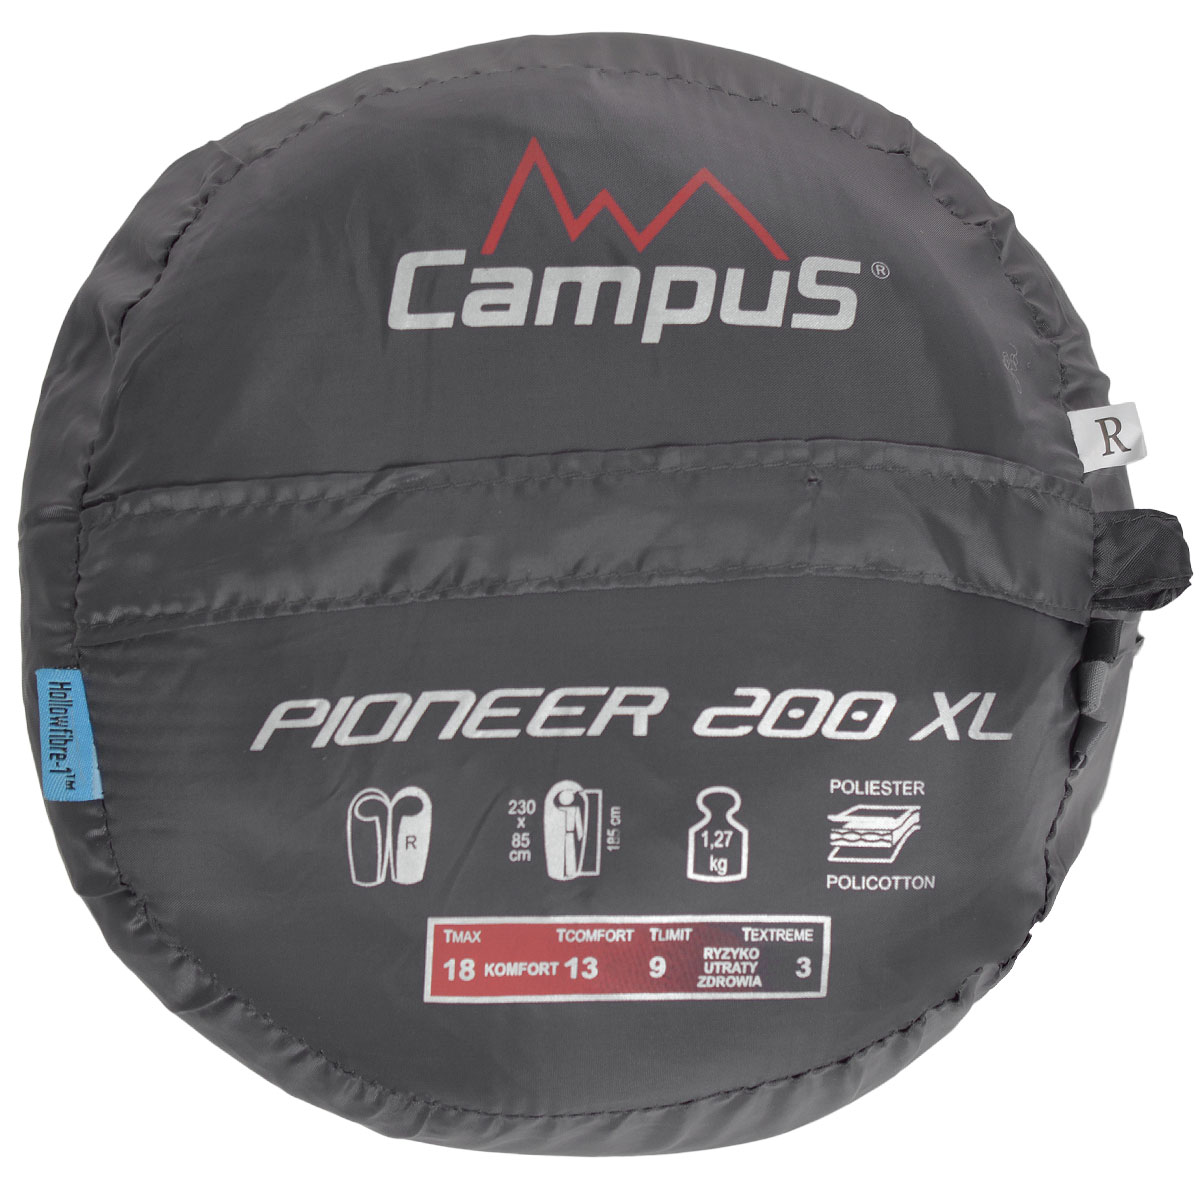   Campus "Pioneer 200 XL",  , 230   80 